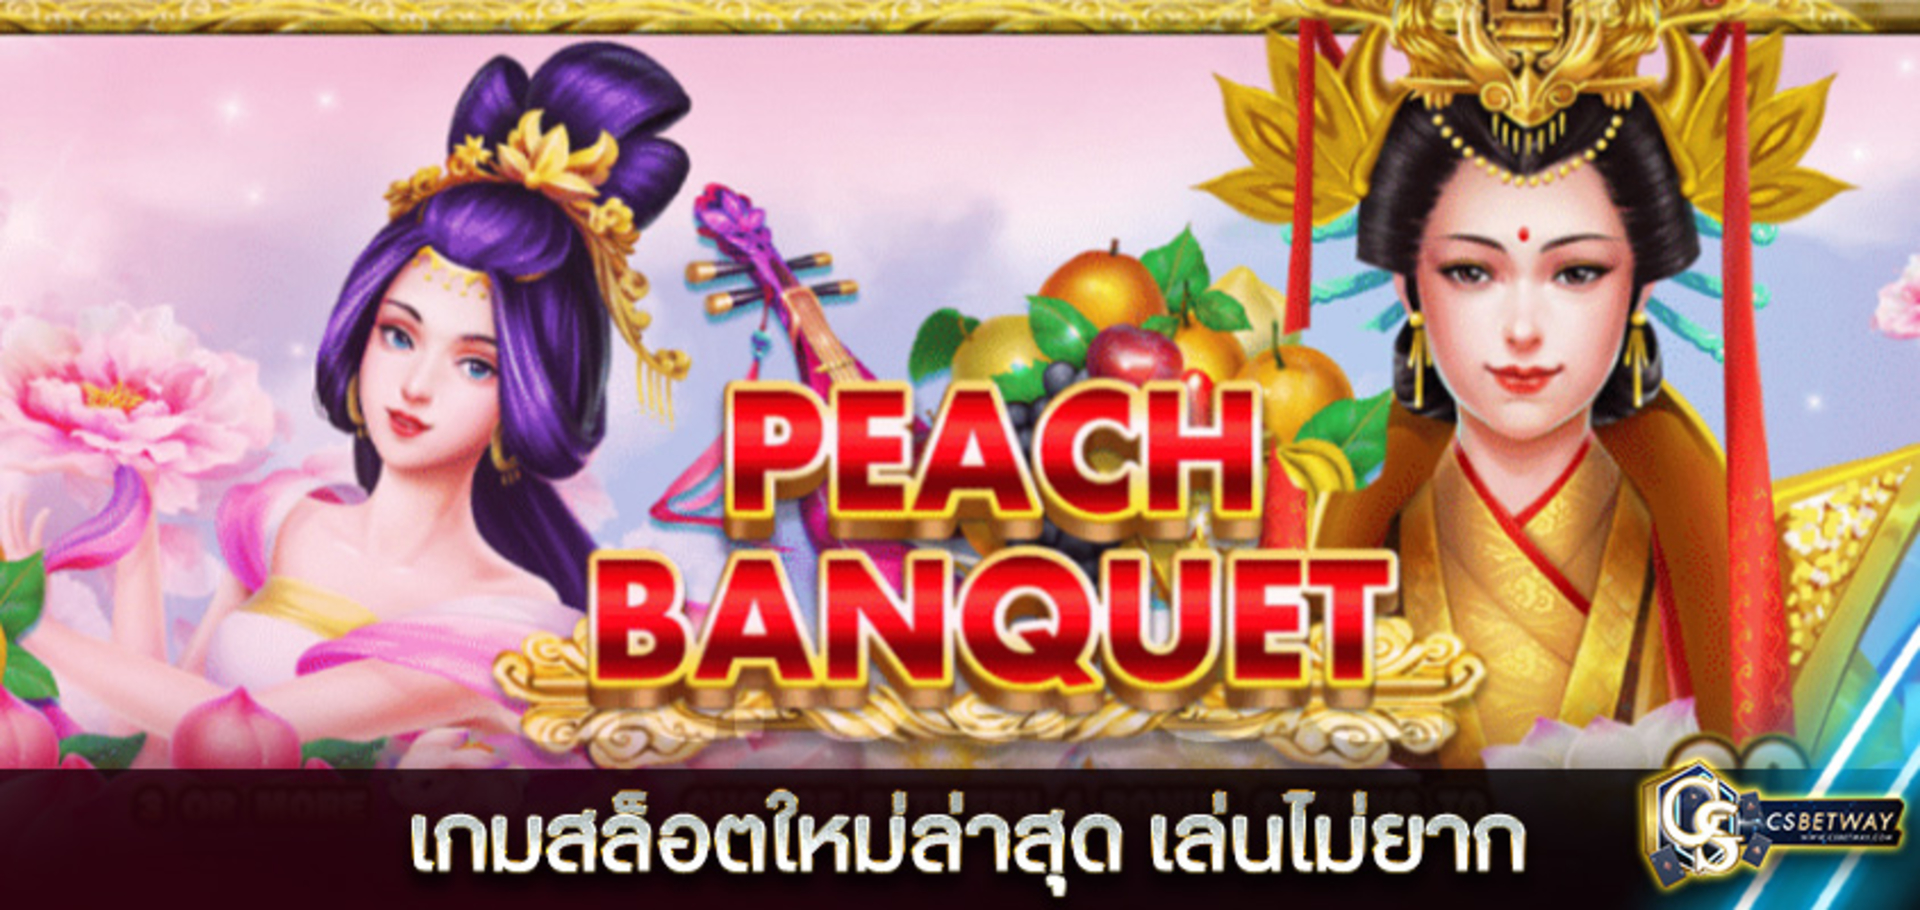 เกมสล็อตออนไลน์  Peach Banquet เกมสล็อตใหม่ล่าสุด เล่นไม่ยาก โบนัสแตกง่ายสุดๆ ได้จริง จ่ายจริง